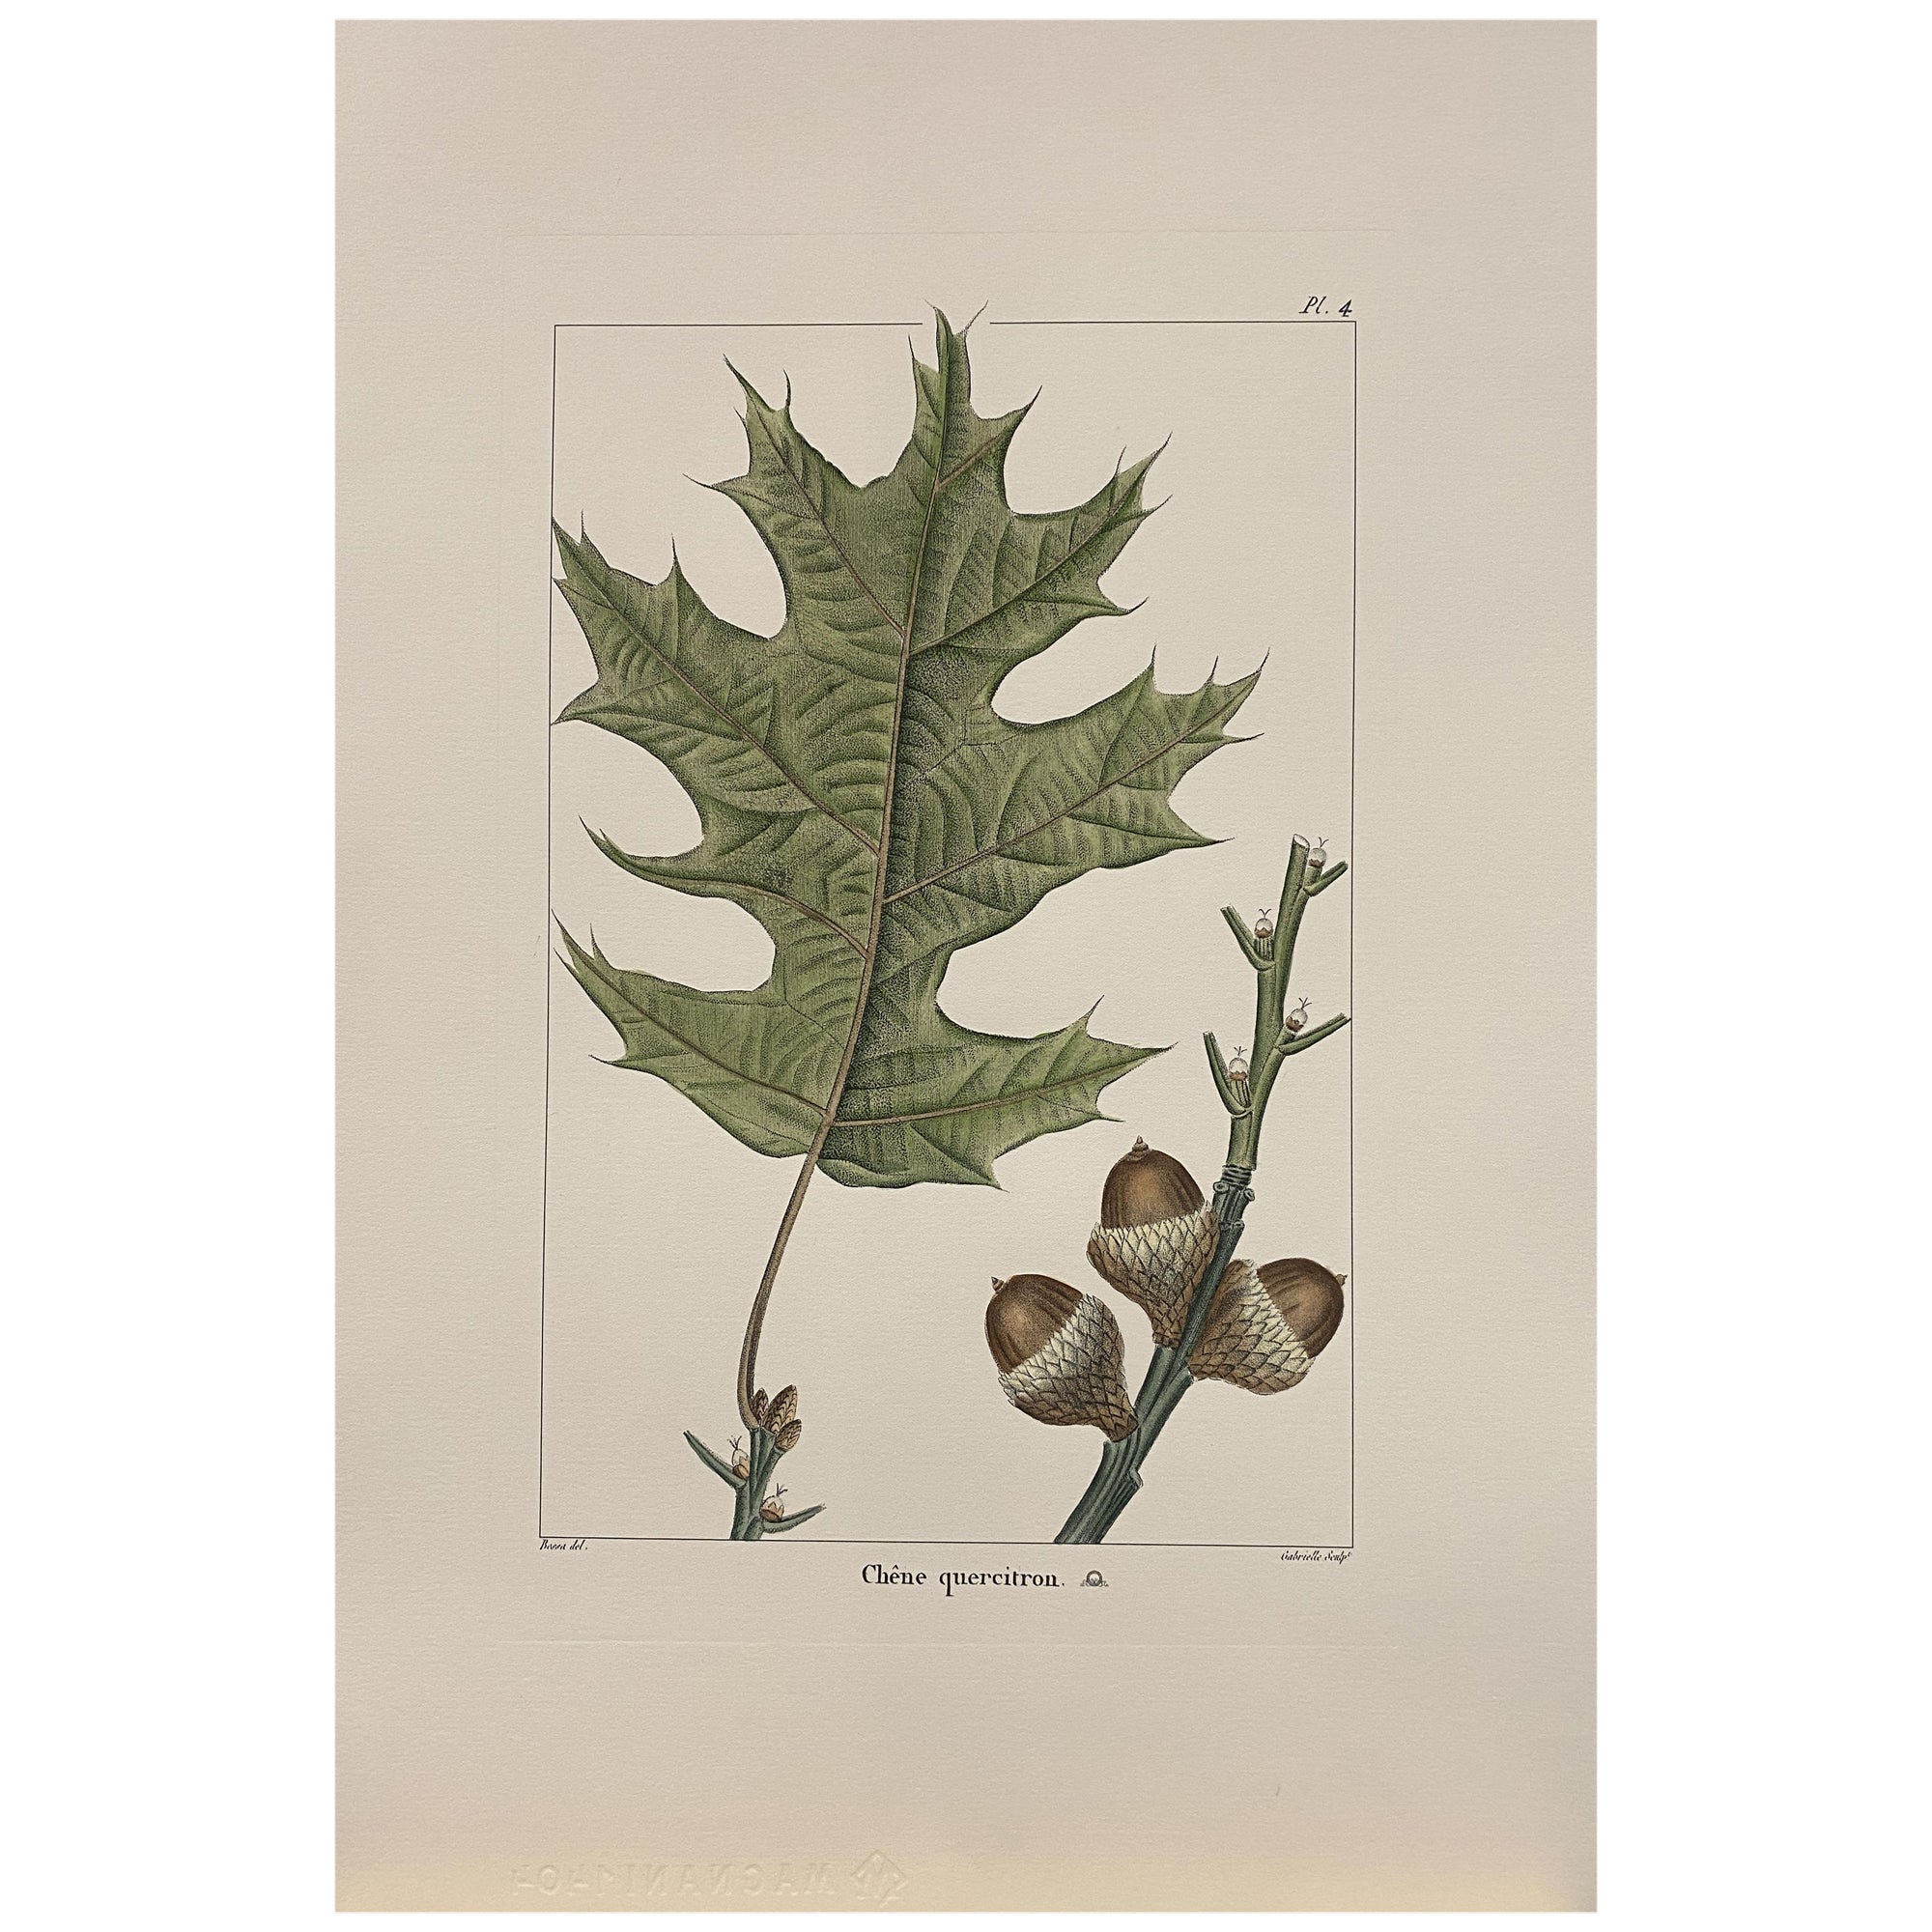 Italienische Contemporary handgemalte botanische Grafik "Chene Quercitron" 4 von 4